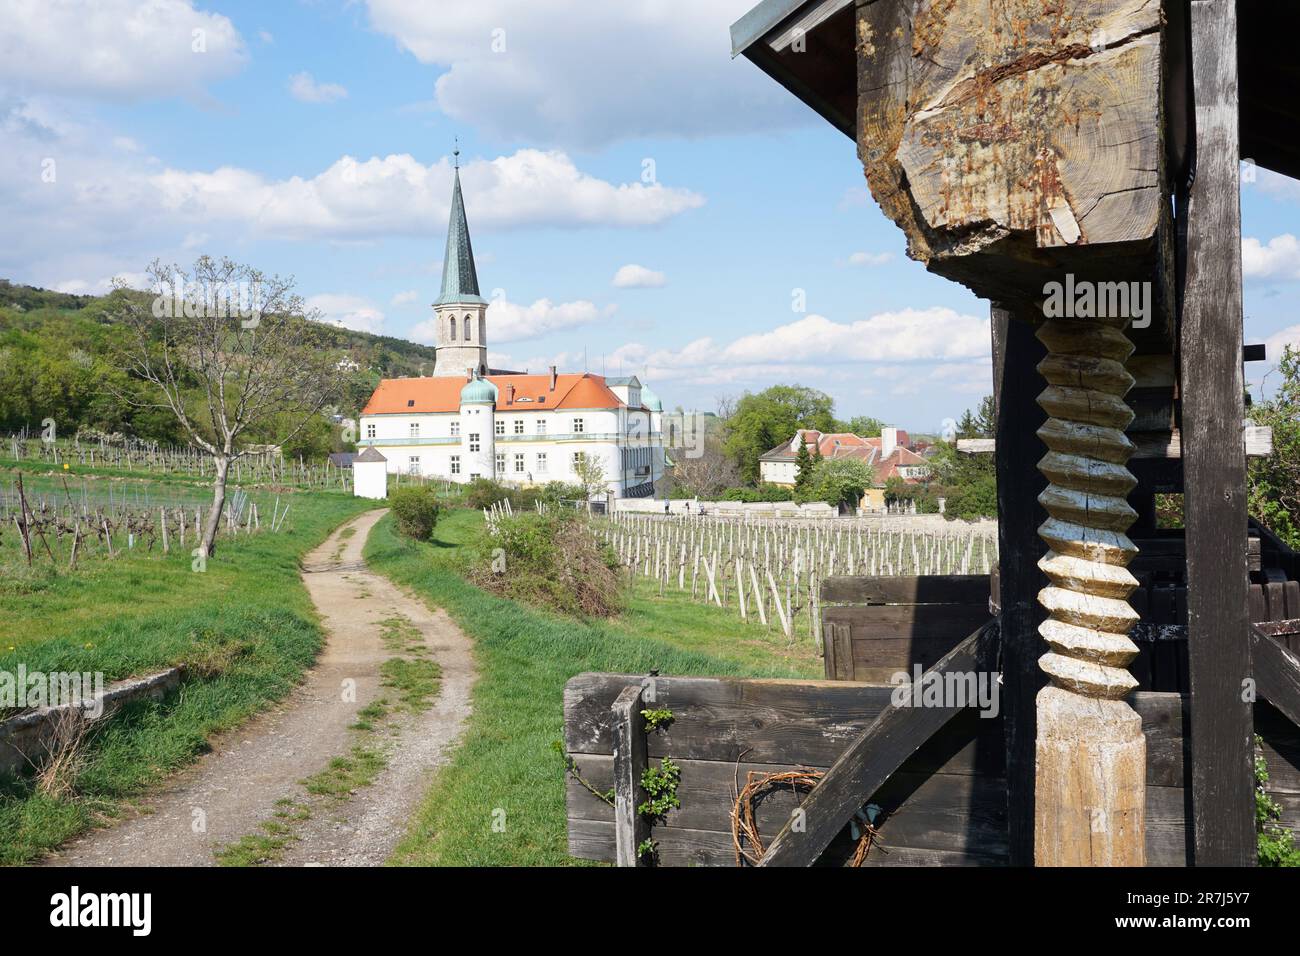 old wine press in vineyard, gumpoldskirchen castle Stock Photo